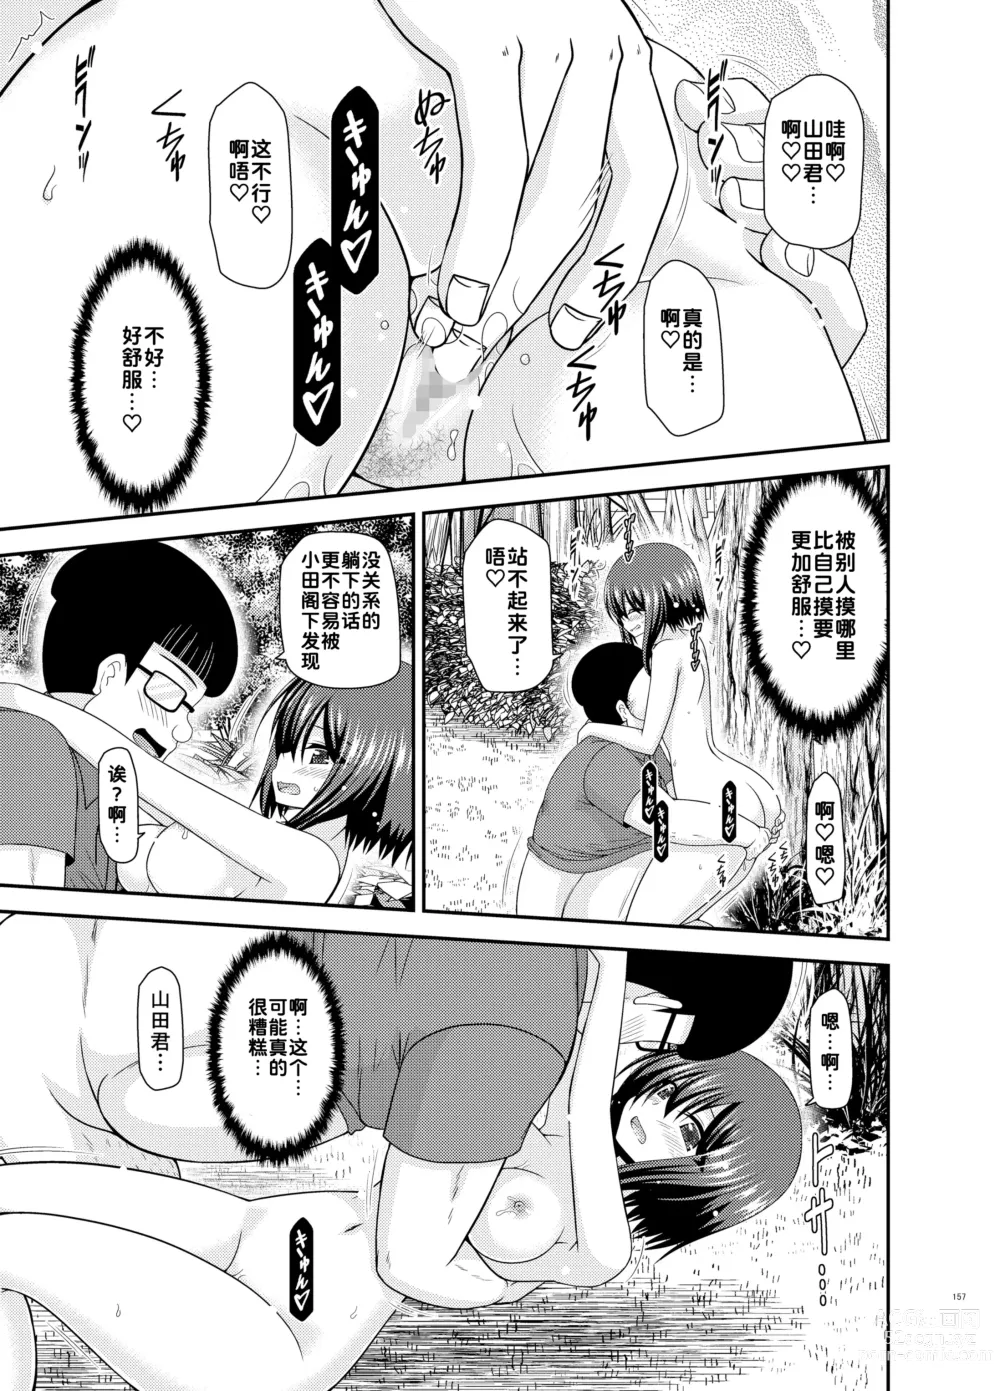 Page 157 of doujinshi Netorare Roshutsu Shoujo